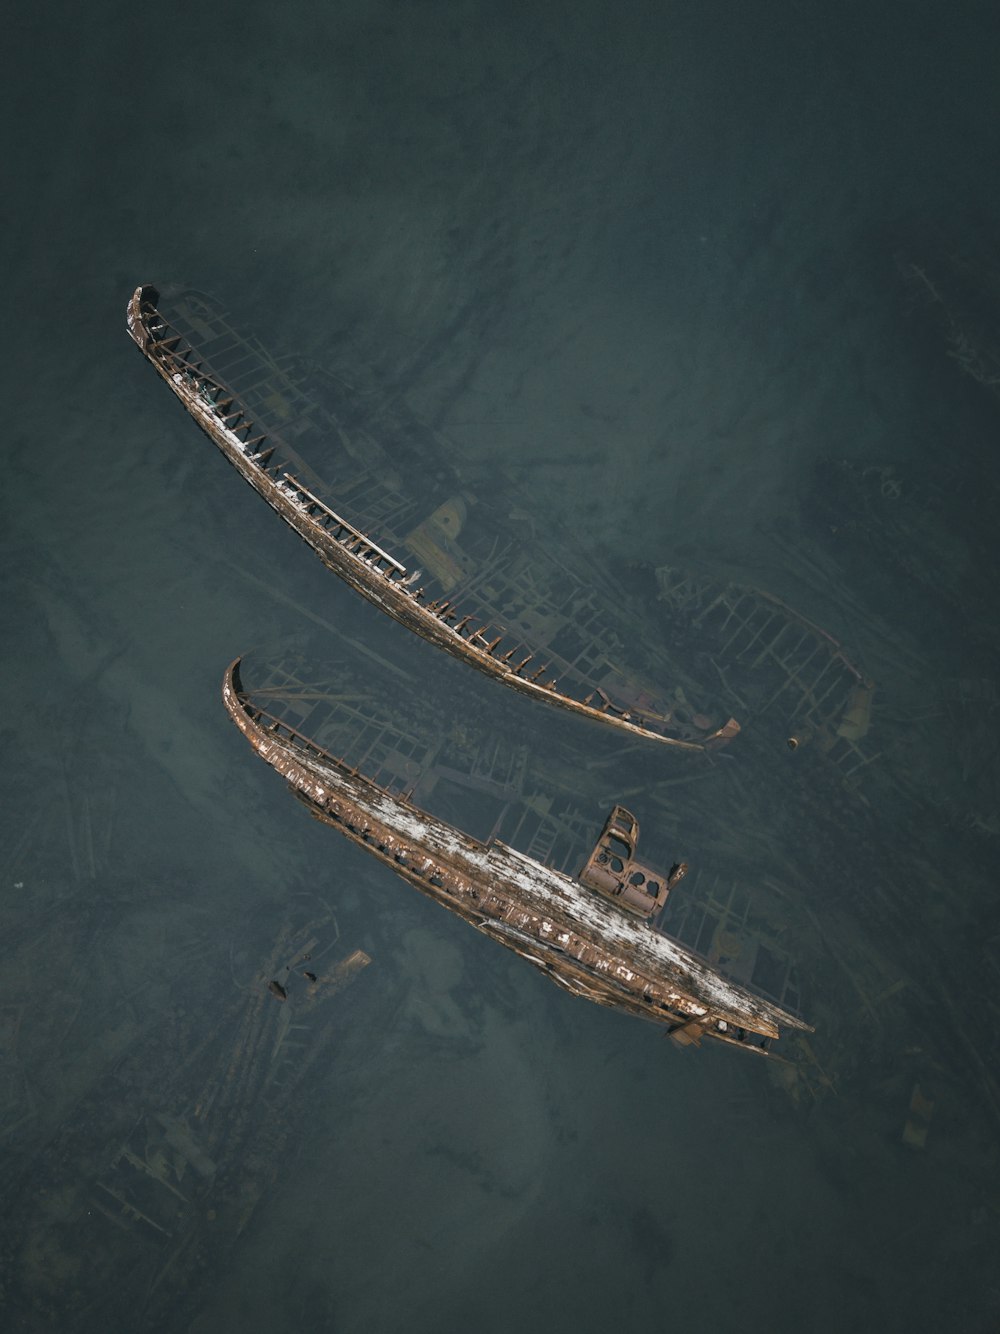 Fotografía aérea de barcos hundidos